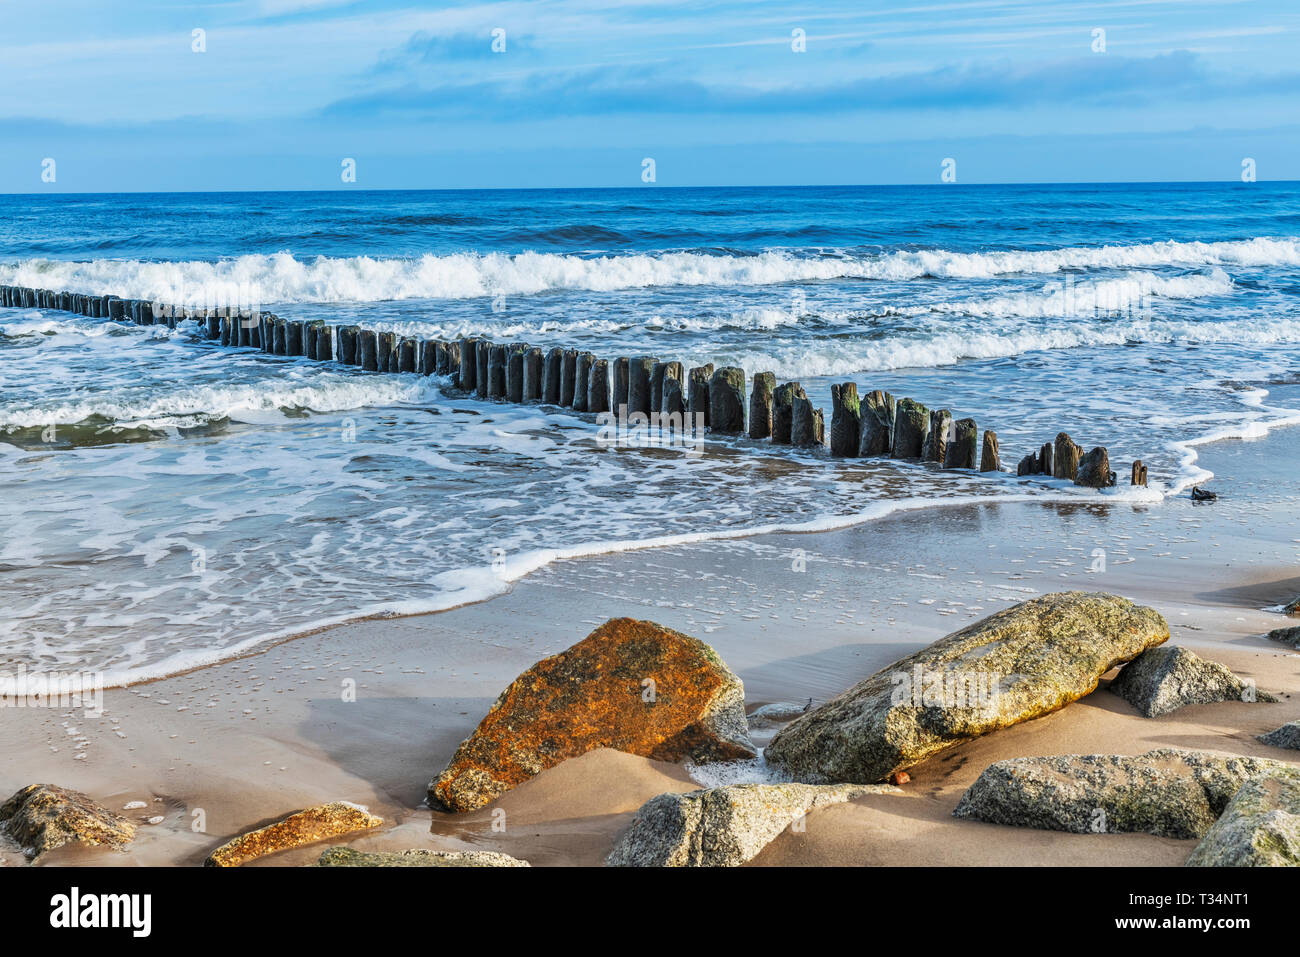 Strand mit Steinen und alte Buhnen an der Ostsee, olobrzeg, Westpommern, Polen, Europa Stockfoto